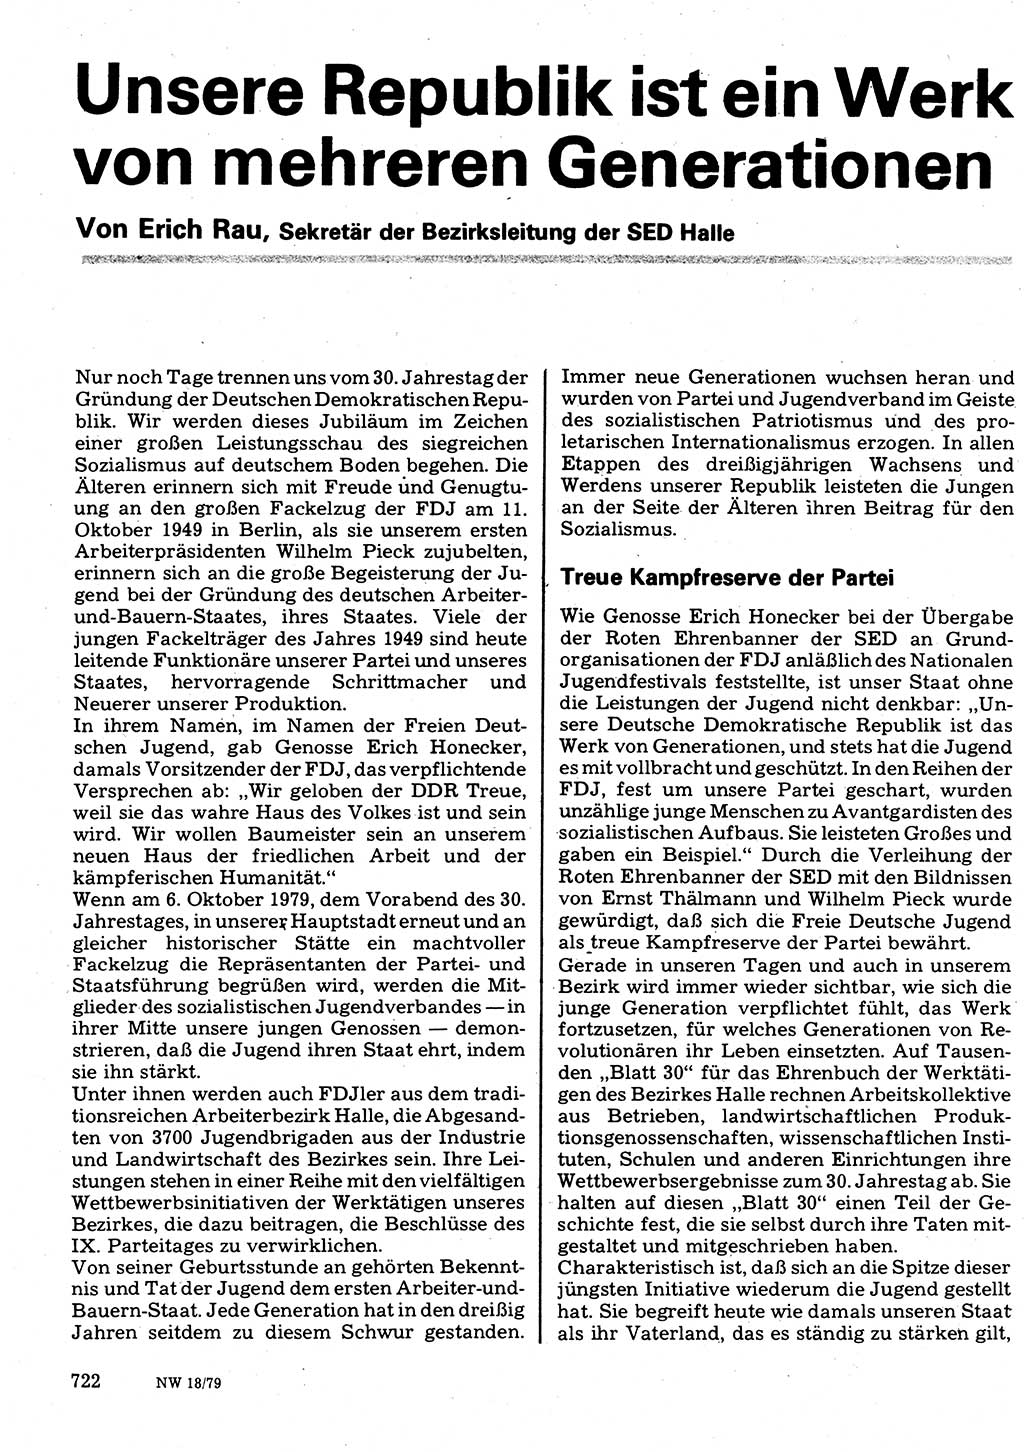 Neuer Weg (NW), Organ des Zentralkomitees (ZK) der SED (Sozialistische Einheitspartei Deutschlands) für Fragen des Parteilebens, 34. Jahrgang [Deutsche Demokratische Republik (DDR)] 1979, Seite 722 (NW ZK SED DDR 1979, S. 722)